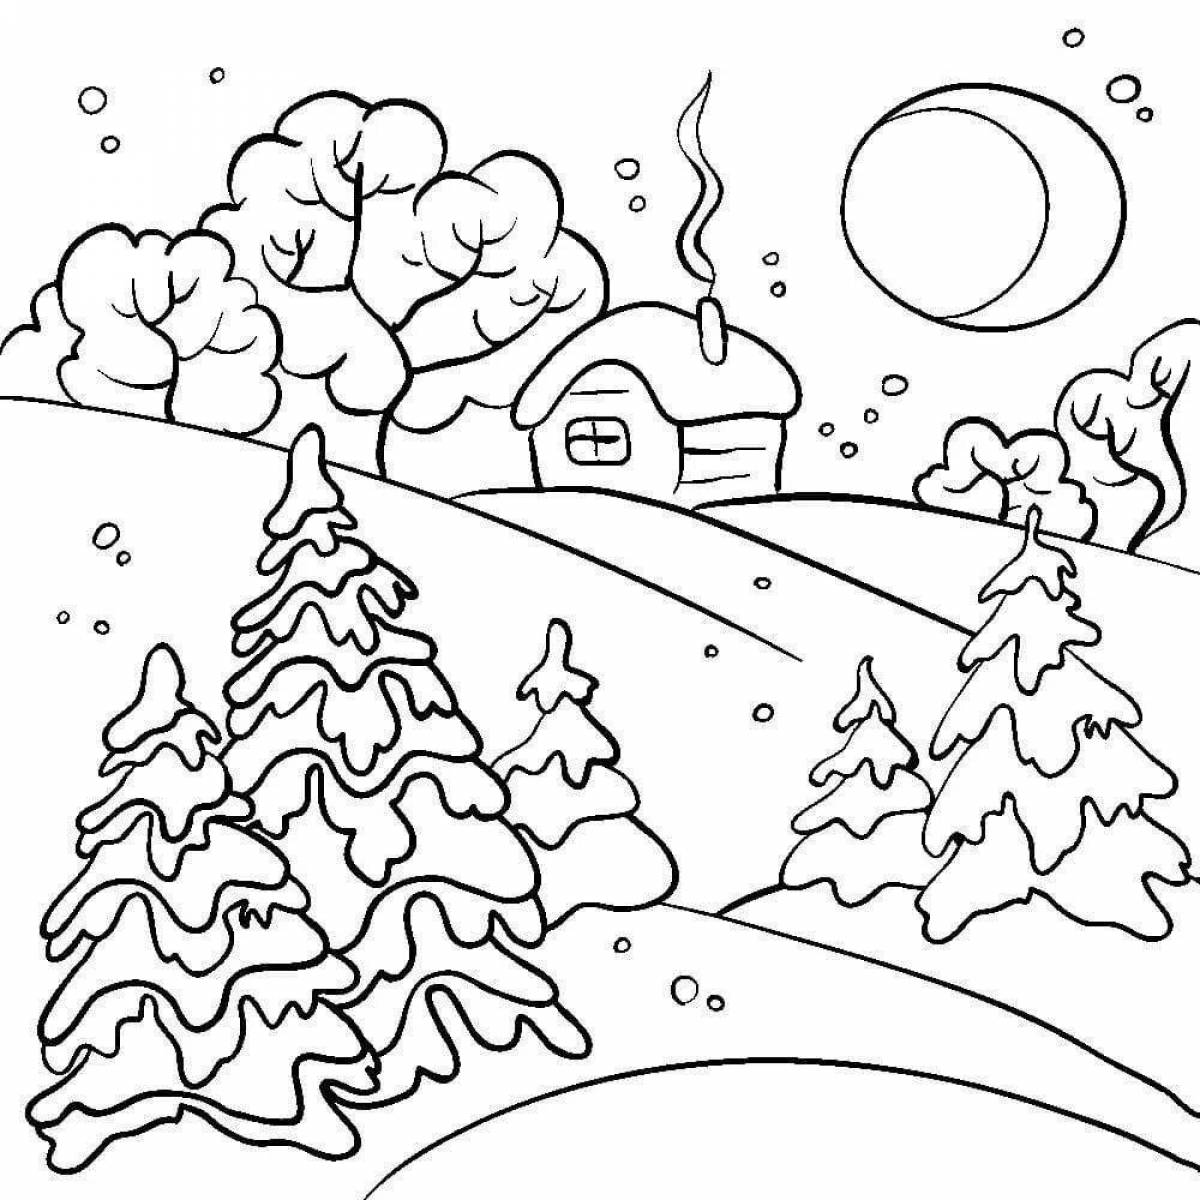 Как нарисовать зимнее дерево поэтапно 6 уроков